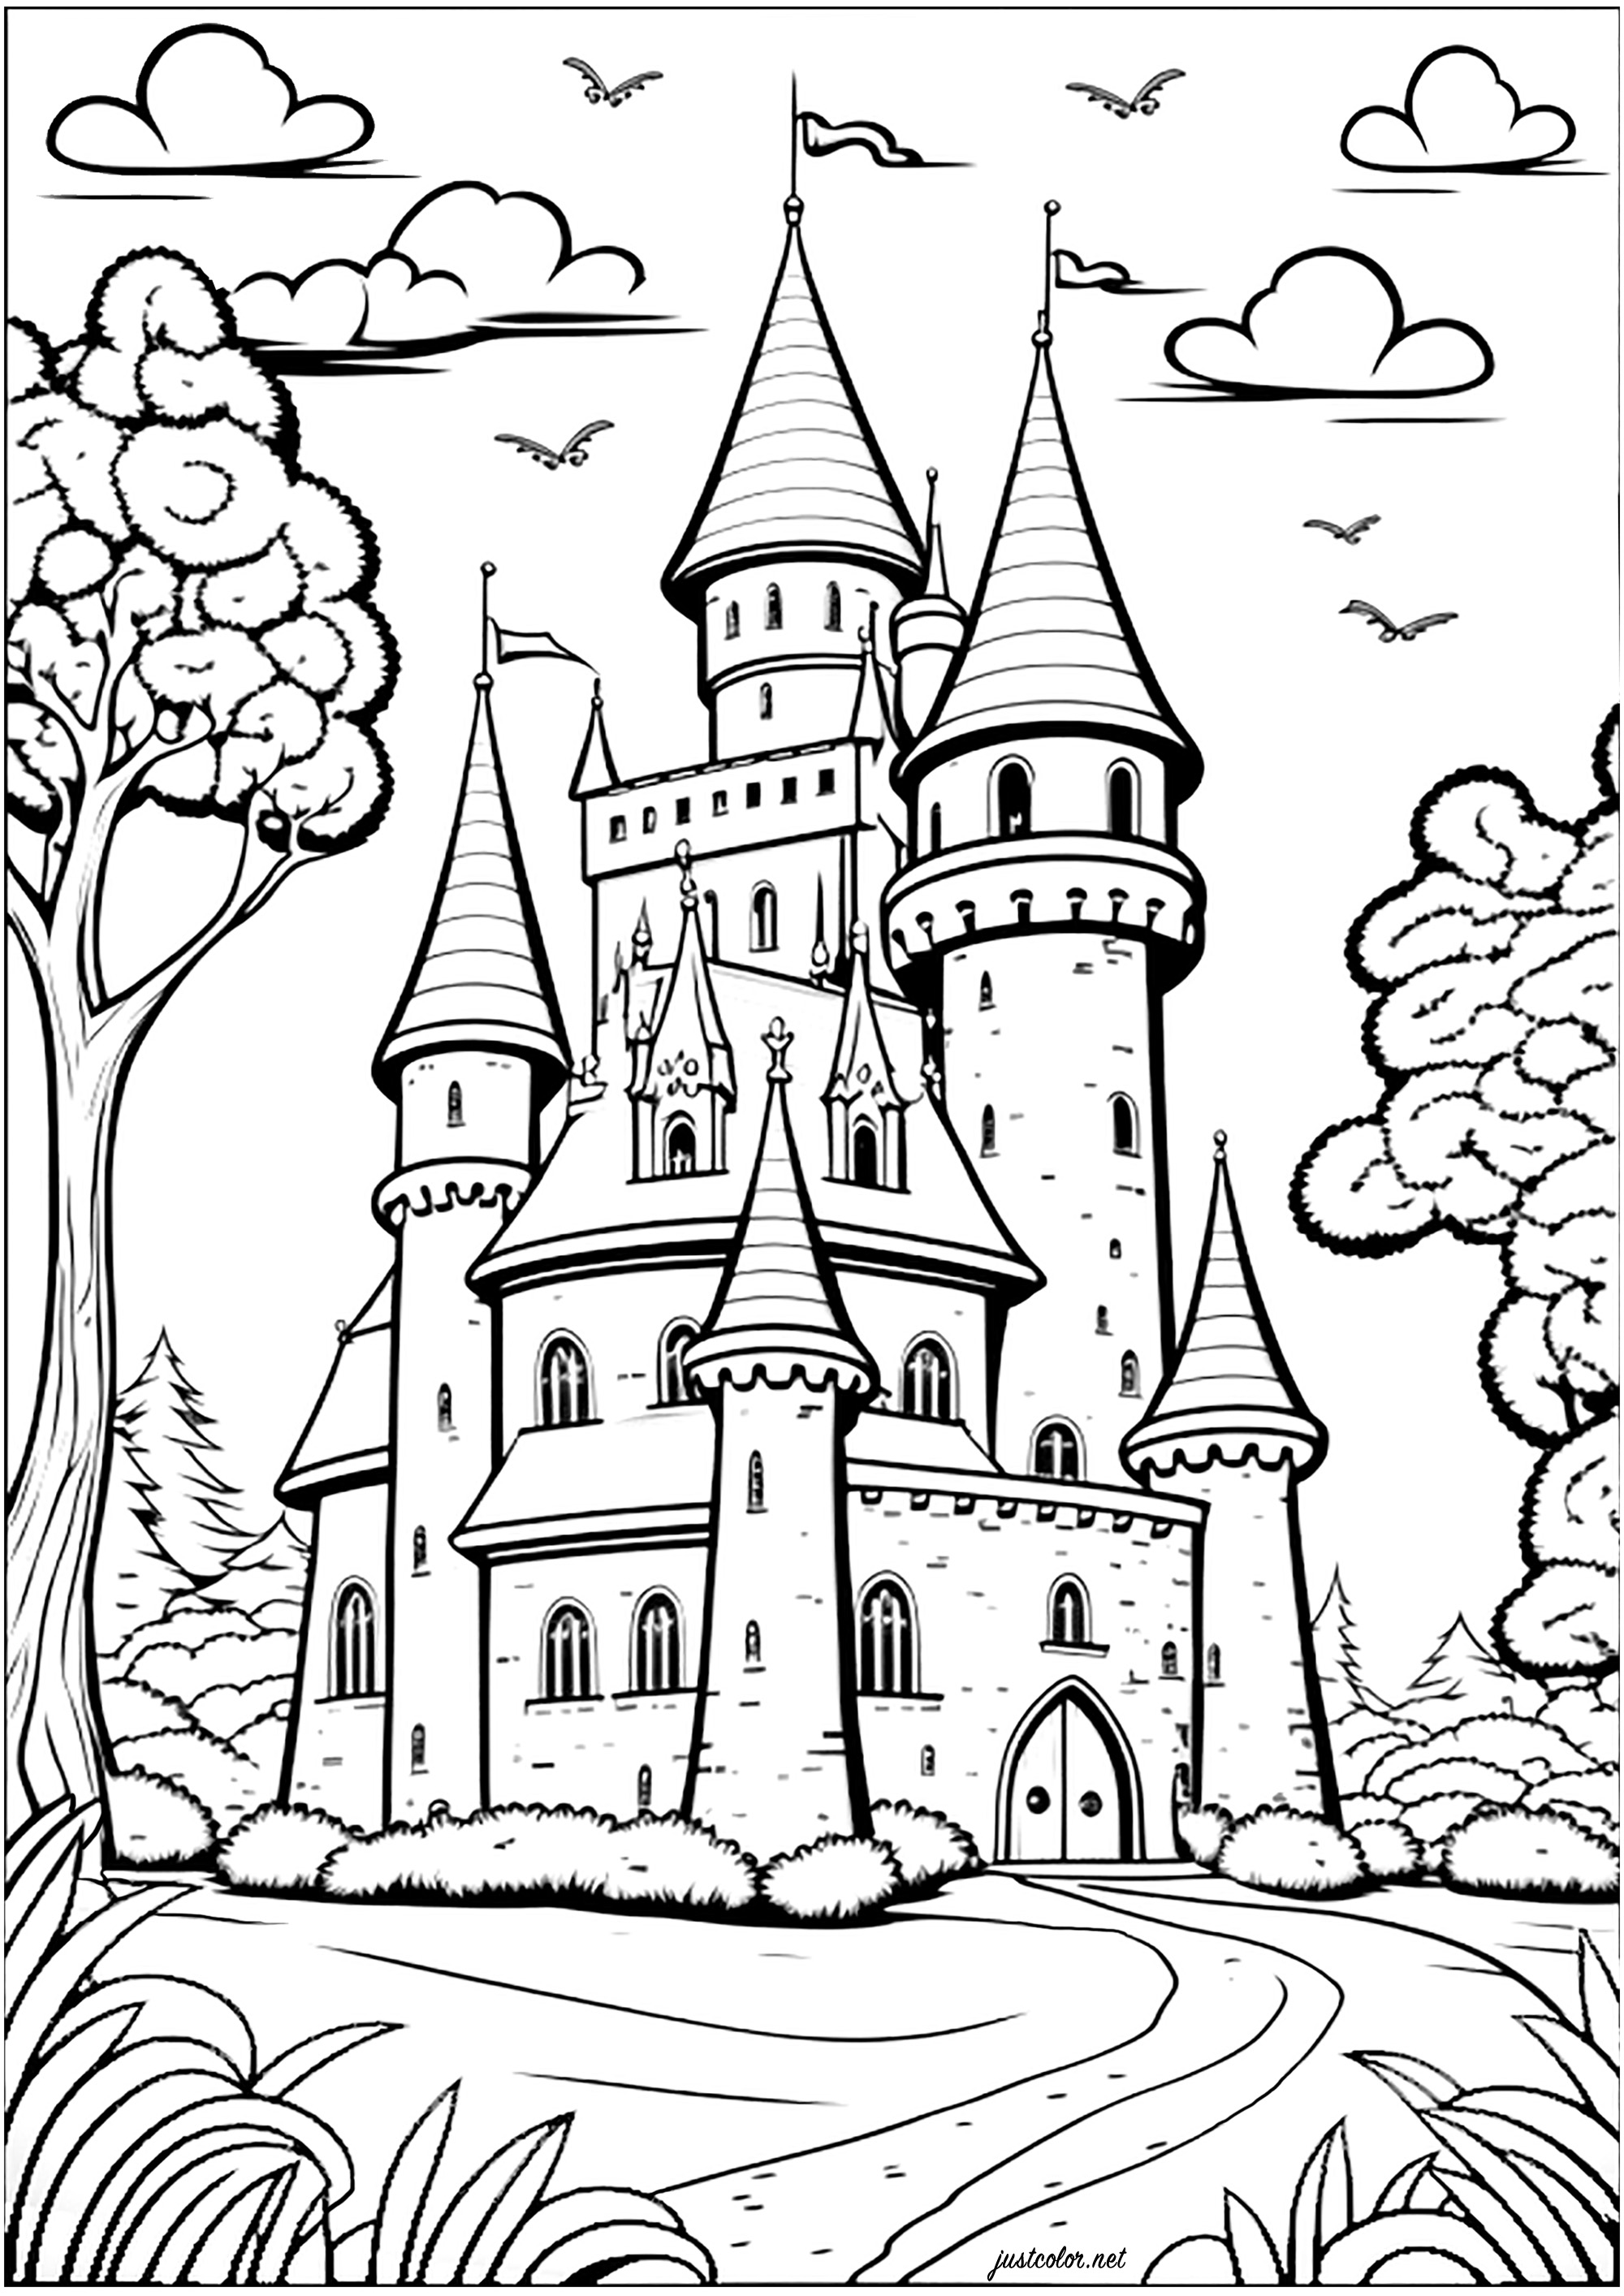 Coloração de um castelo num reino imaginárioColorir todas as suas torres, janelas, portas e paredes para um momento encantado!